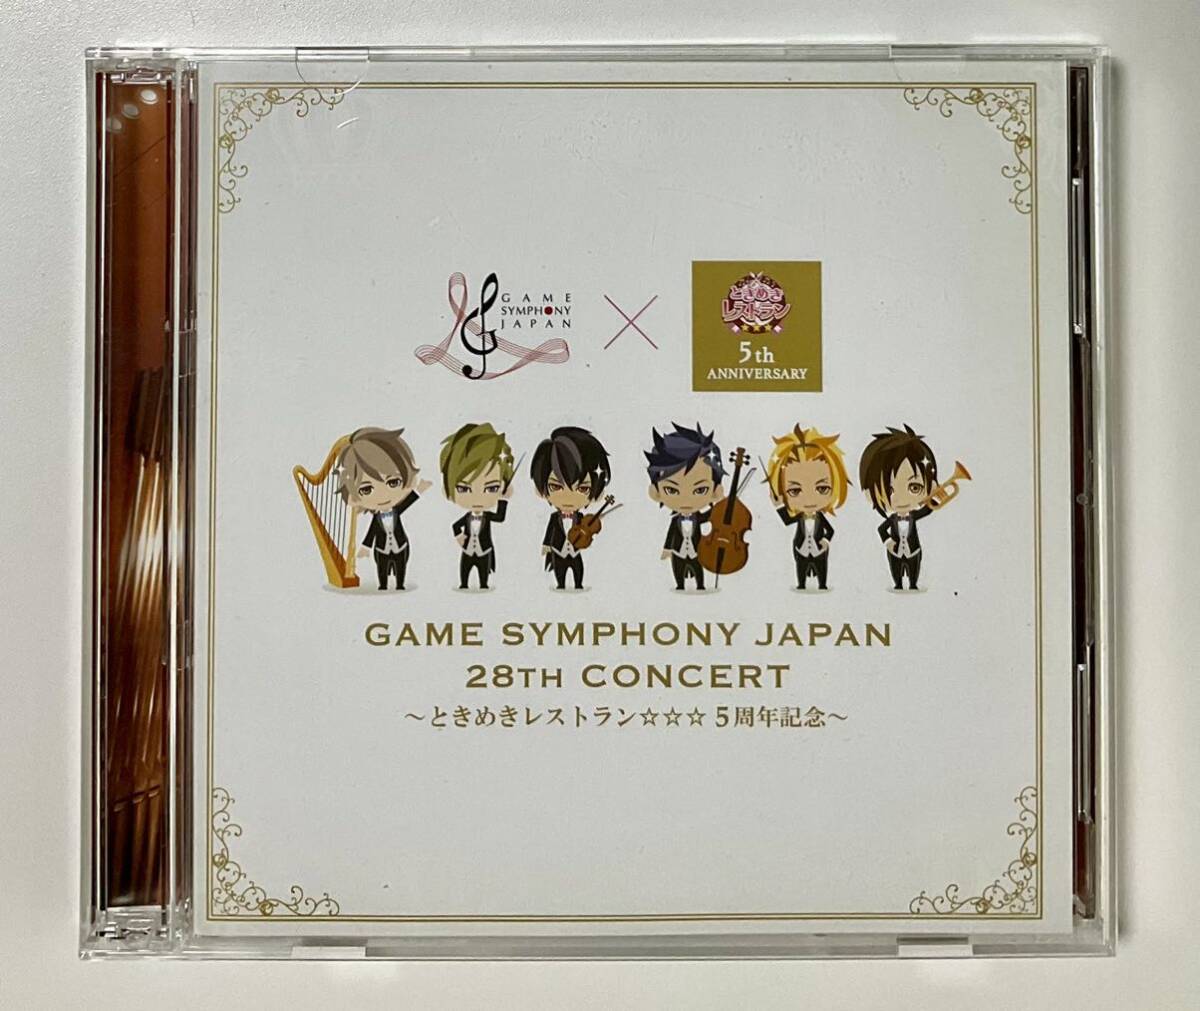 CD２枚組 GAME SYMPHONY JAPAN 28th concert ときめきレストラン5周年記念 ゲームシンフォニージャパンの画像1